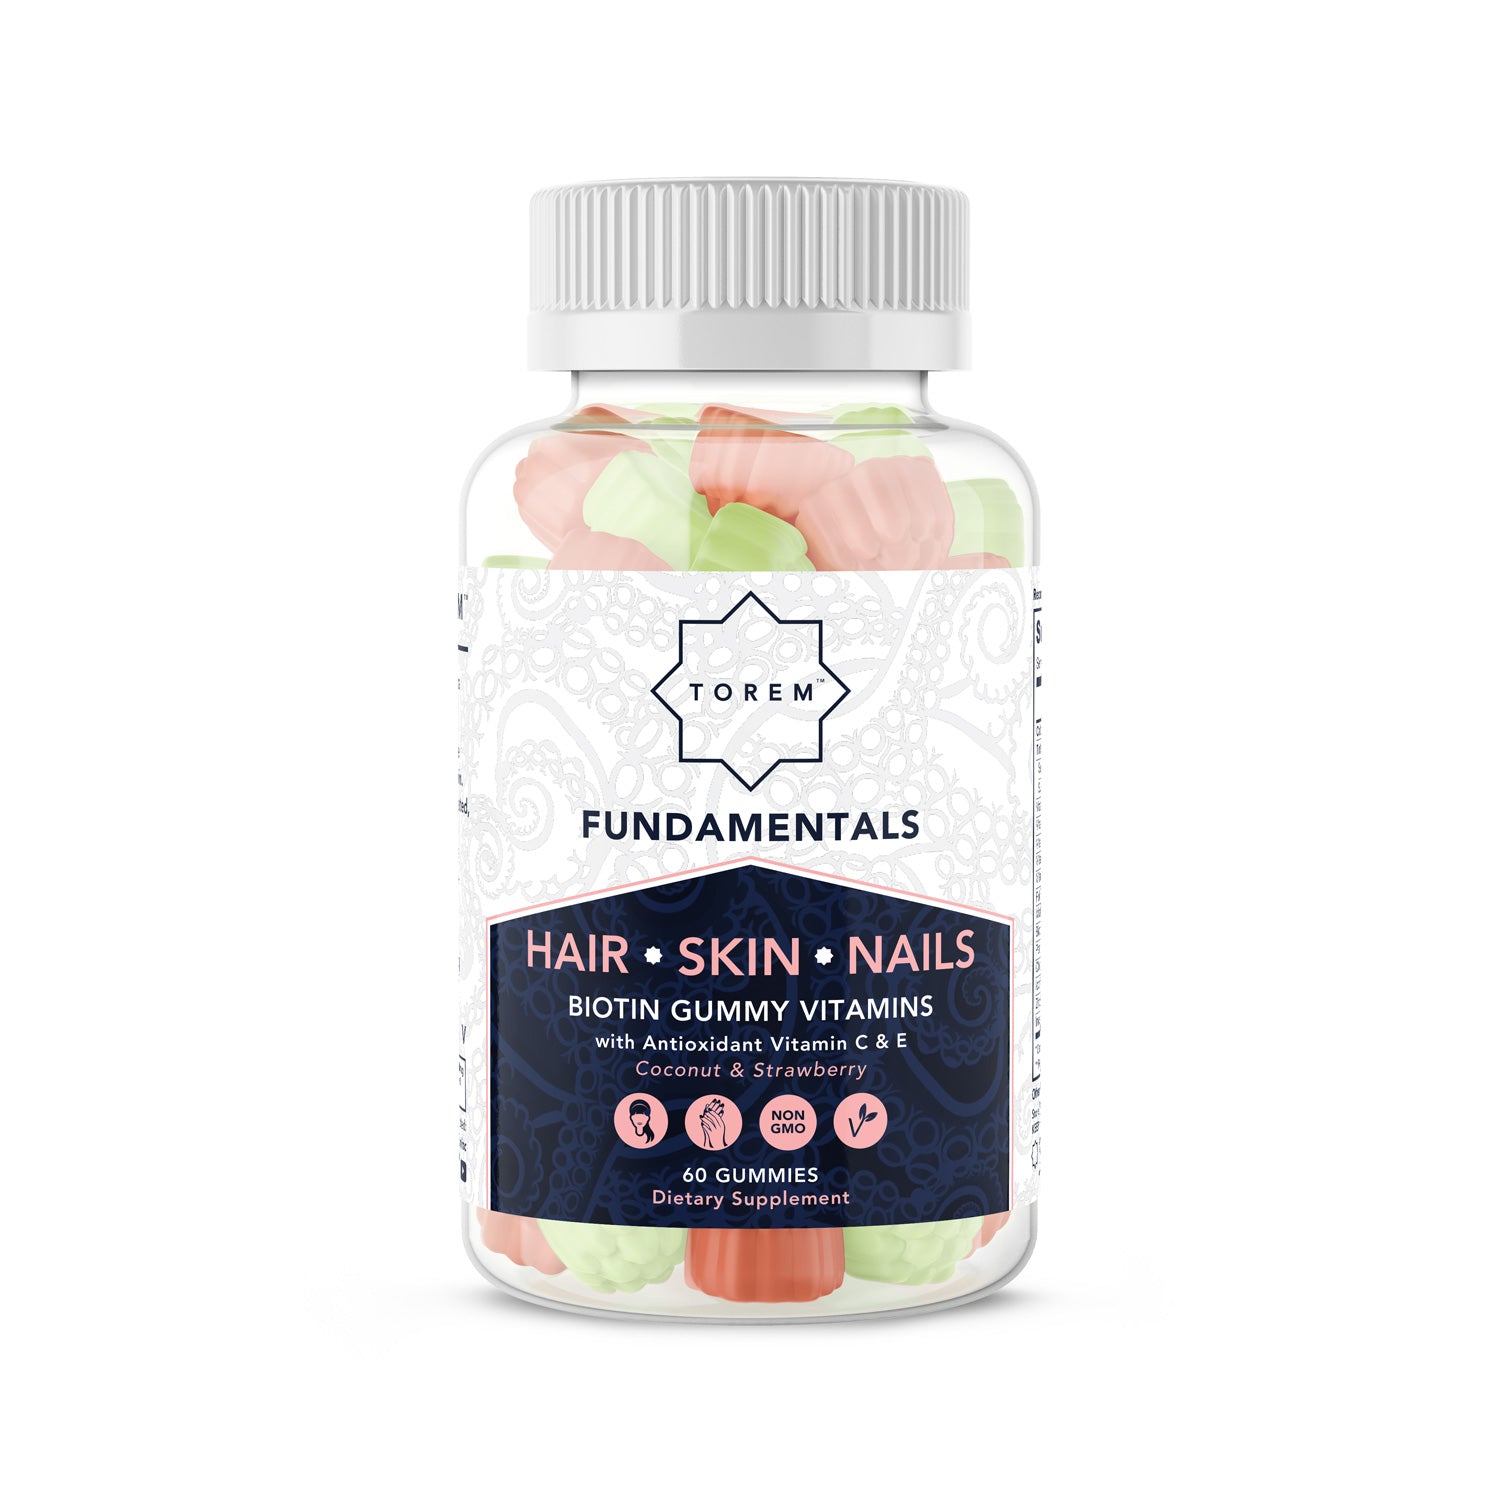 HAIR | SKIN | NAILS : Biotin Gummy Vitamin